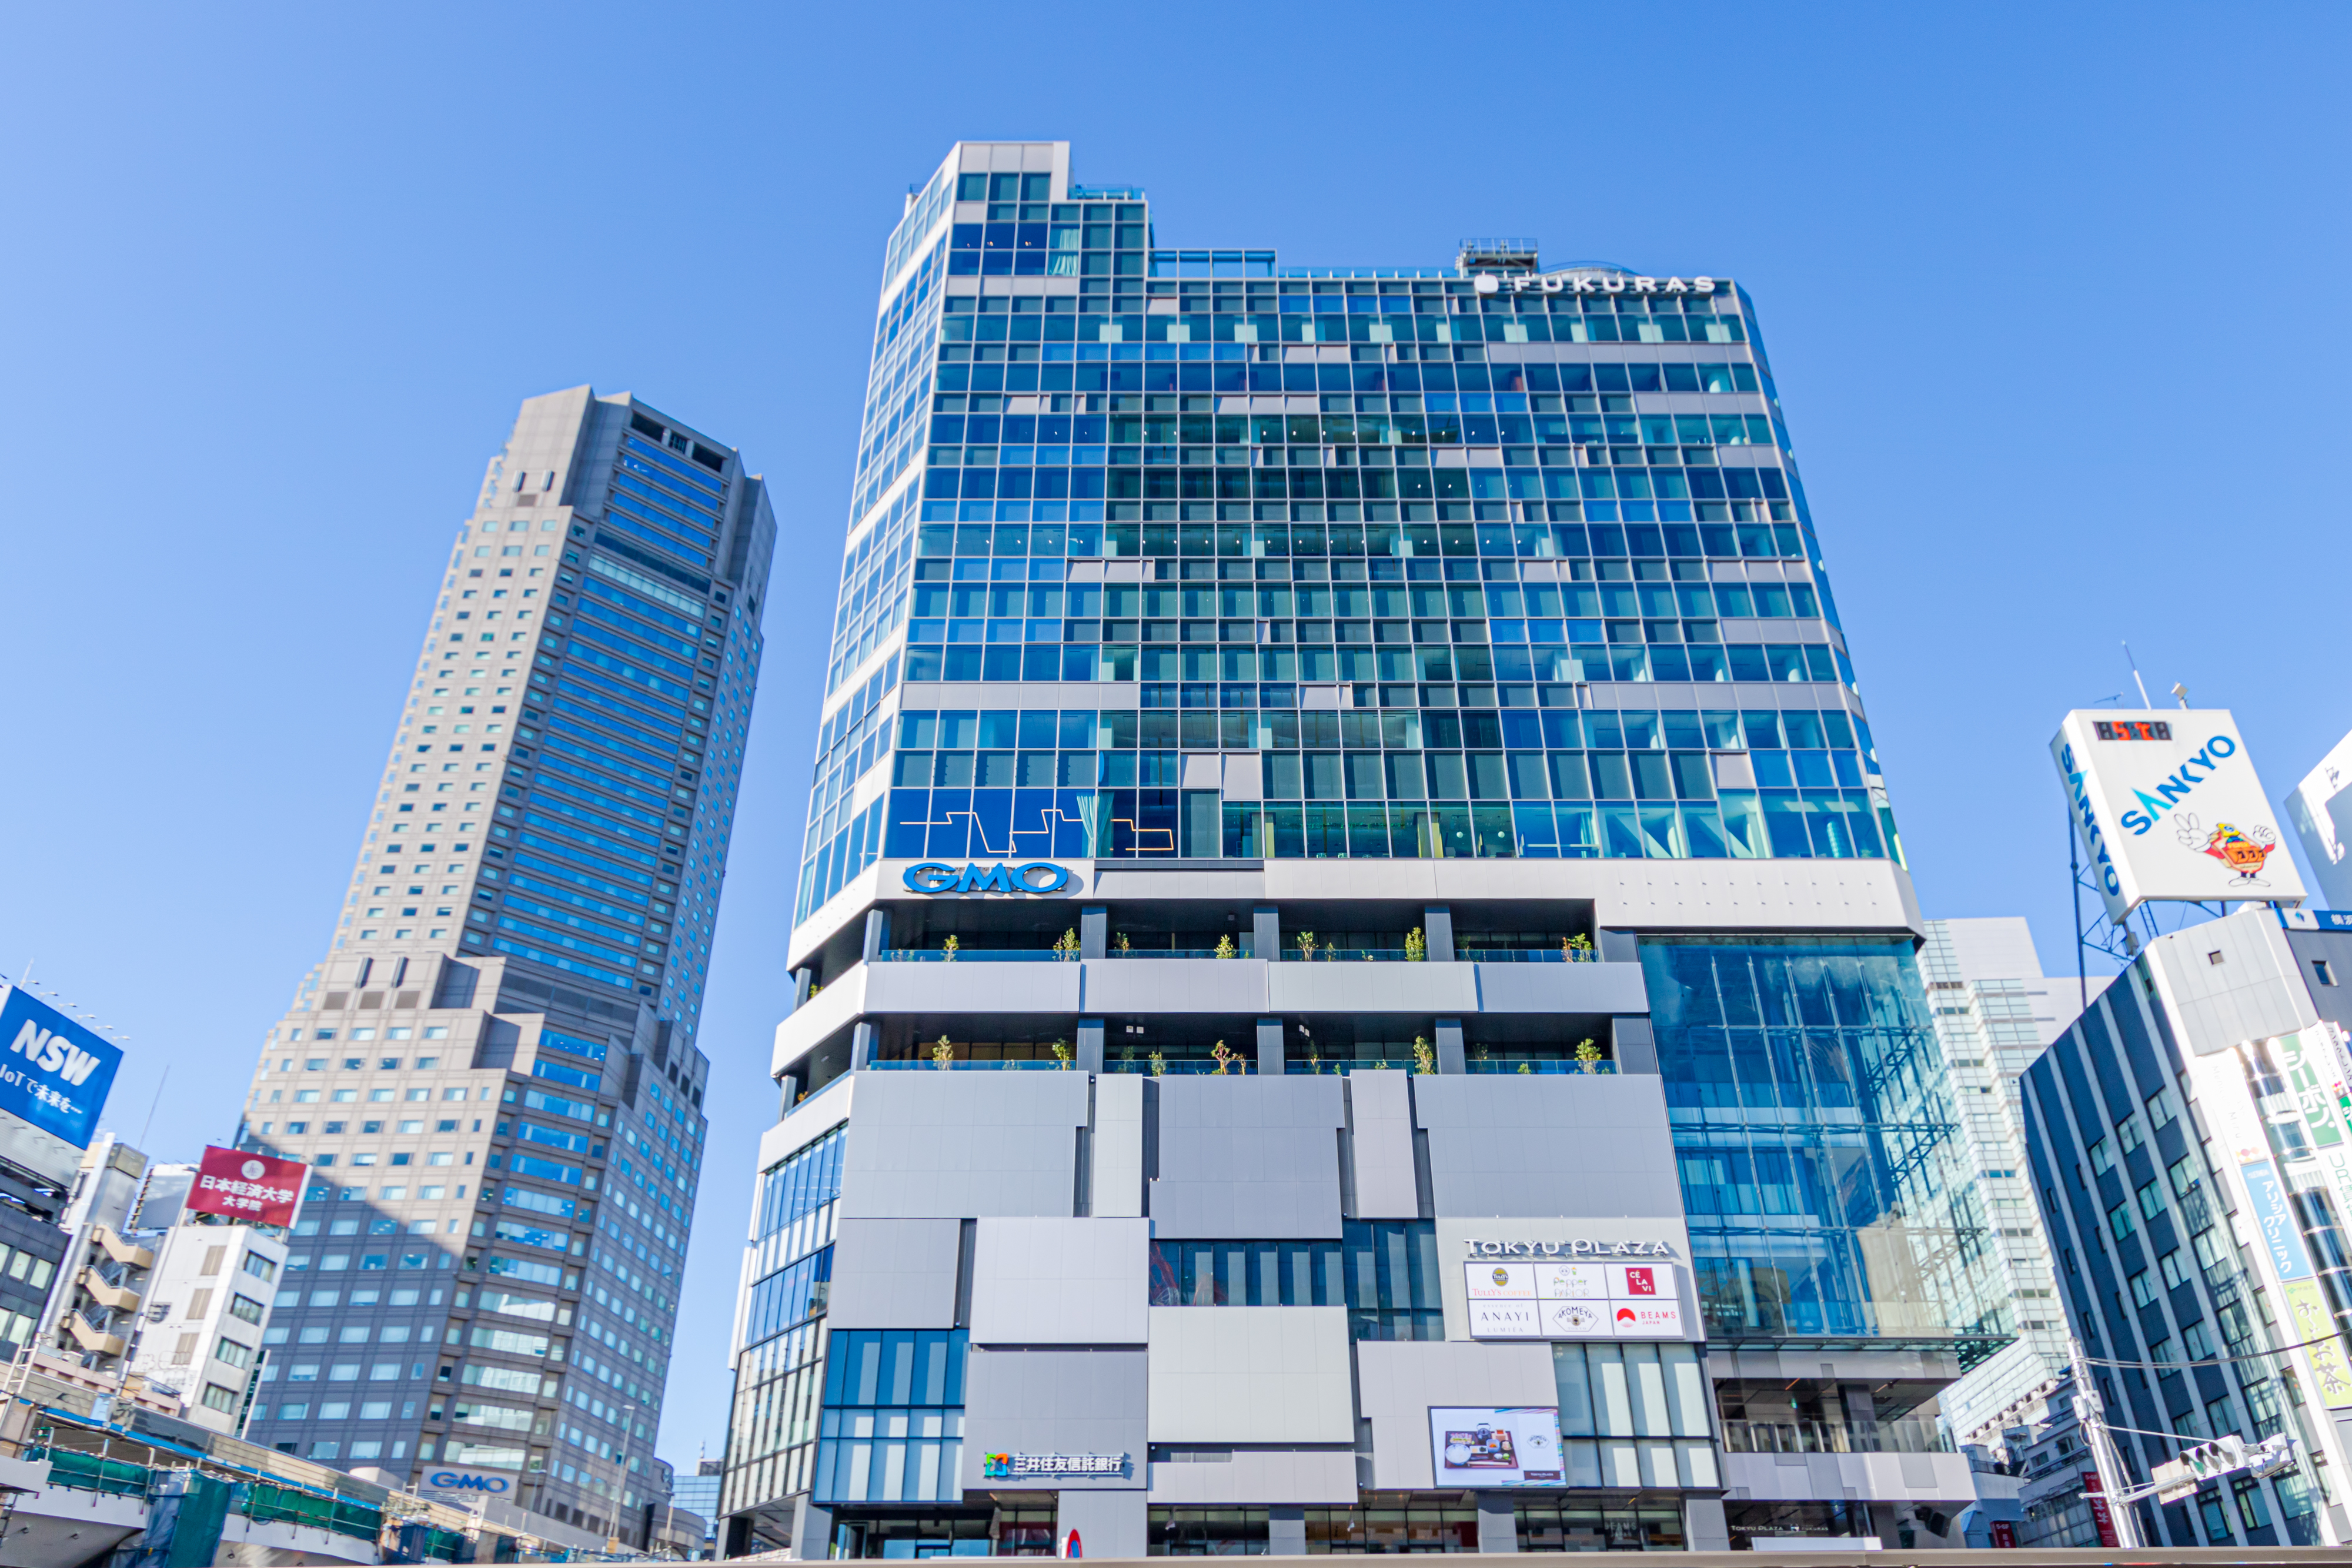 2019年12月に開業した渋谷駅前「渋谷フクラス」にオフィスを構えています。